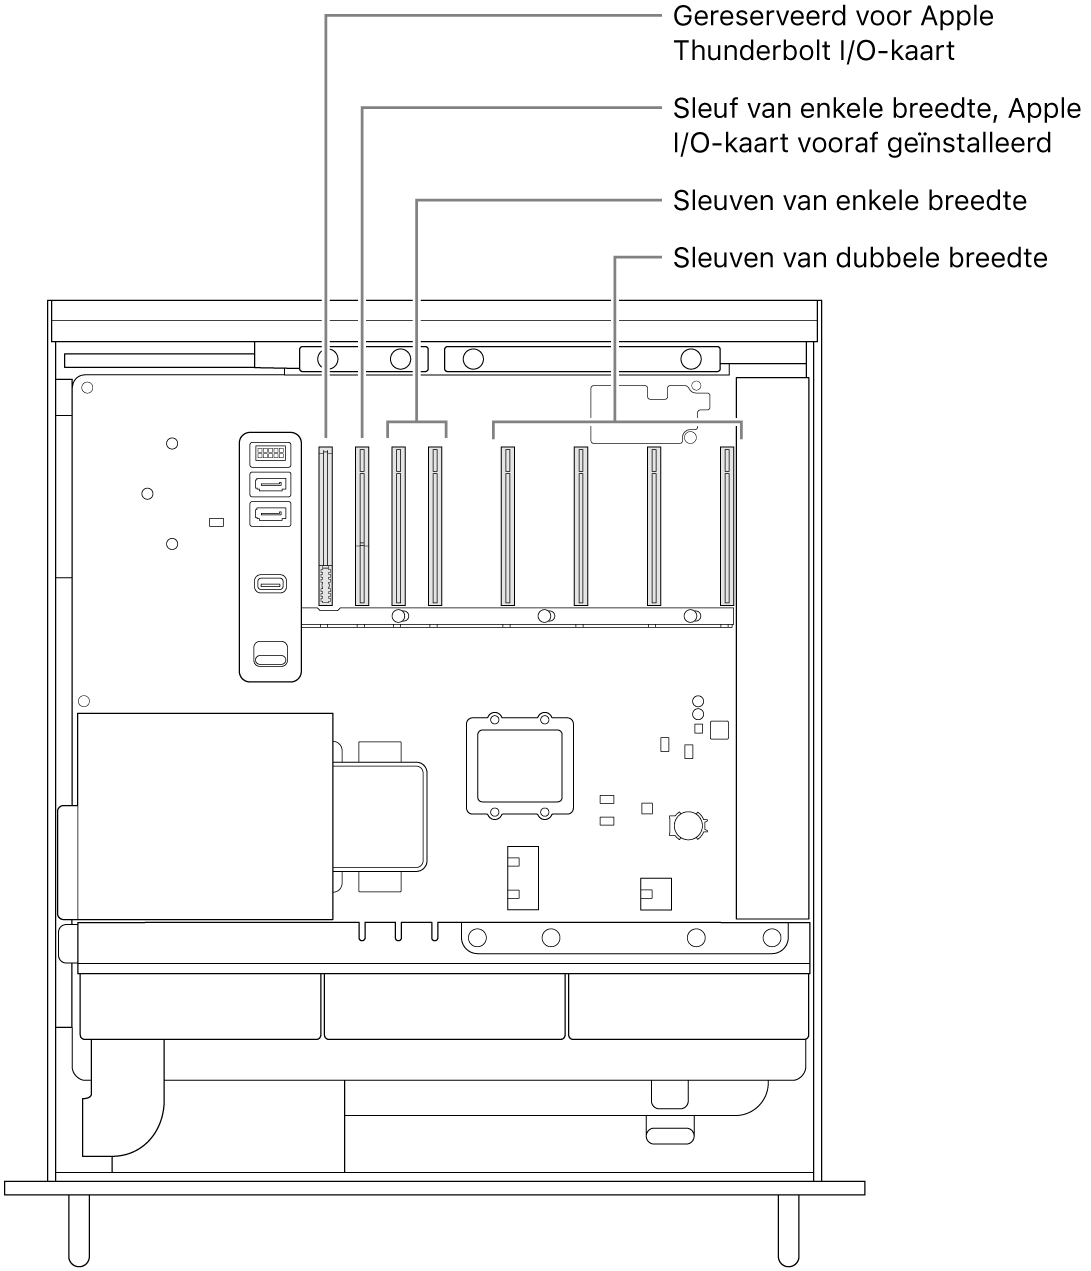 De geopende zijkant van de Mac Pro, met bijschriften die de locatie aangeven van de sleuf voor de Thunderbolt I/O-kaart, de sleuf van enkele breedte voor de Apple I/O-kaart, twee sleuven van enkele breedte en vier sleuven van dubbele breedte.